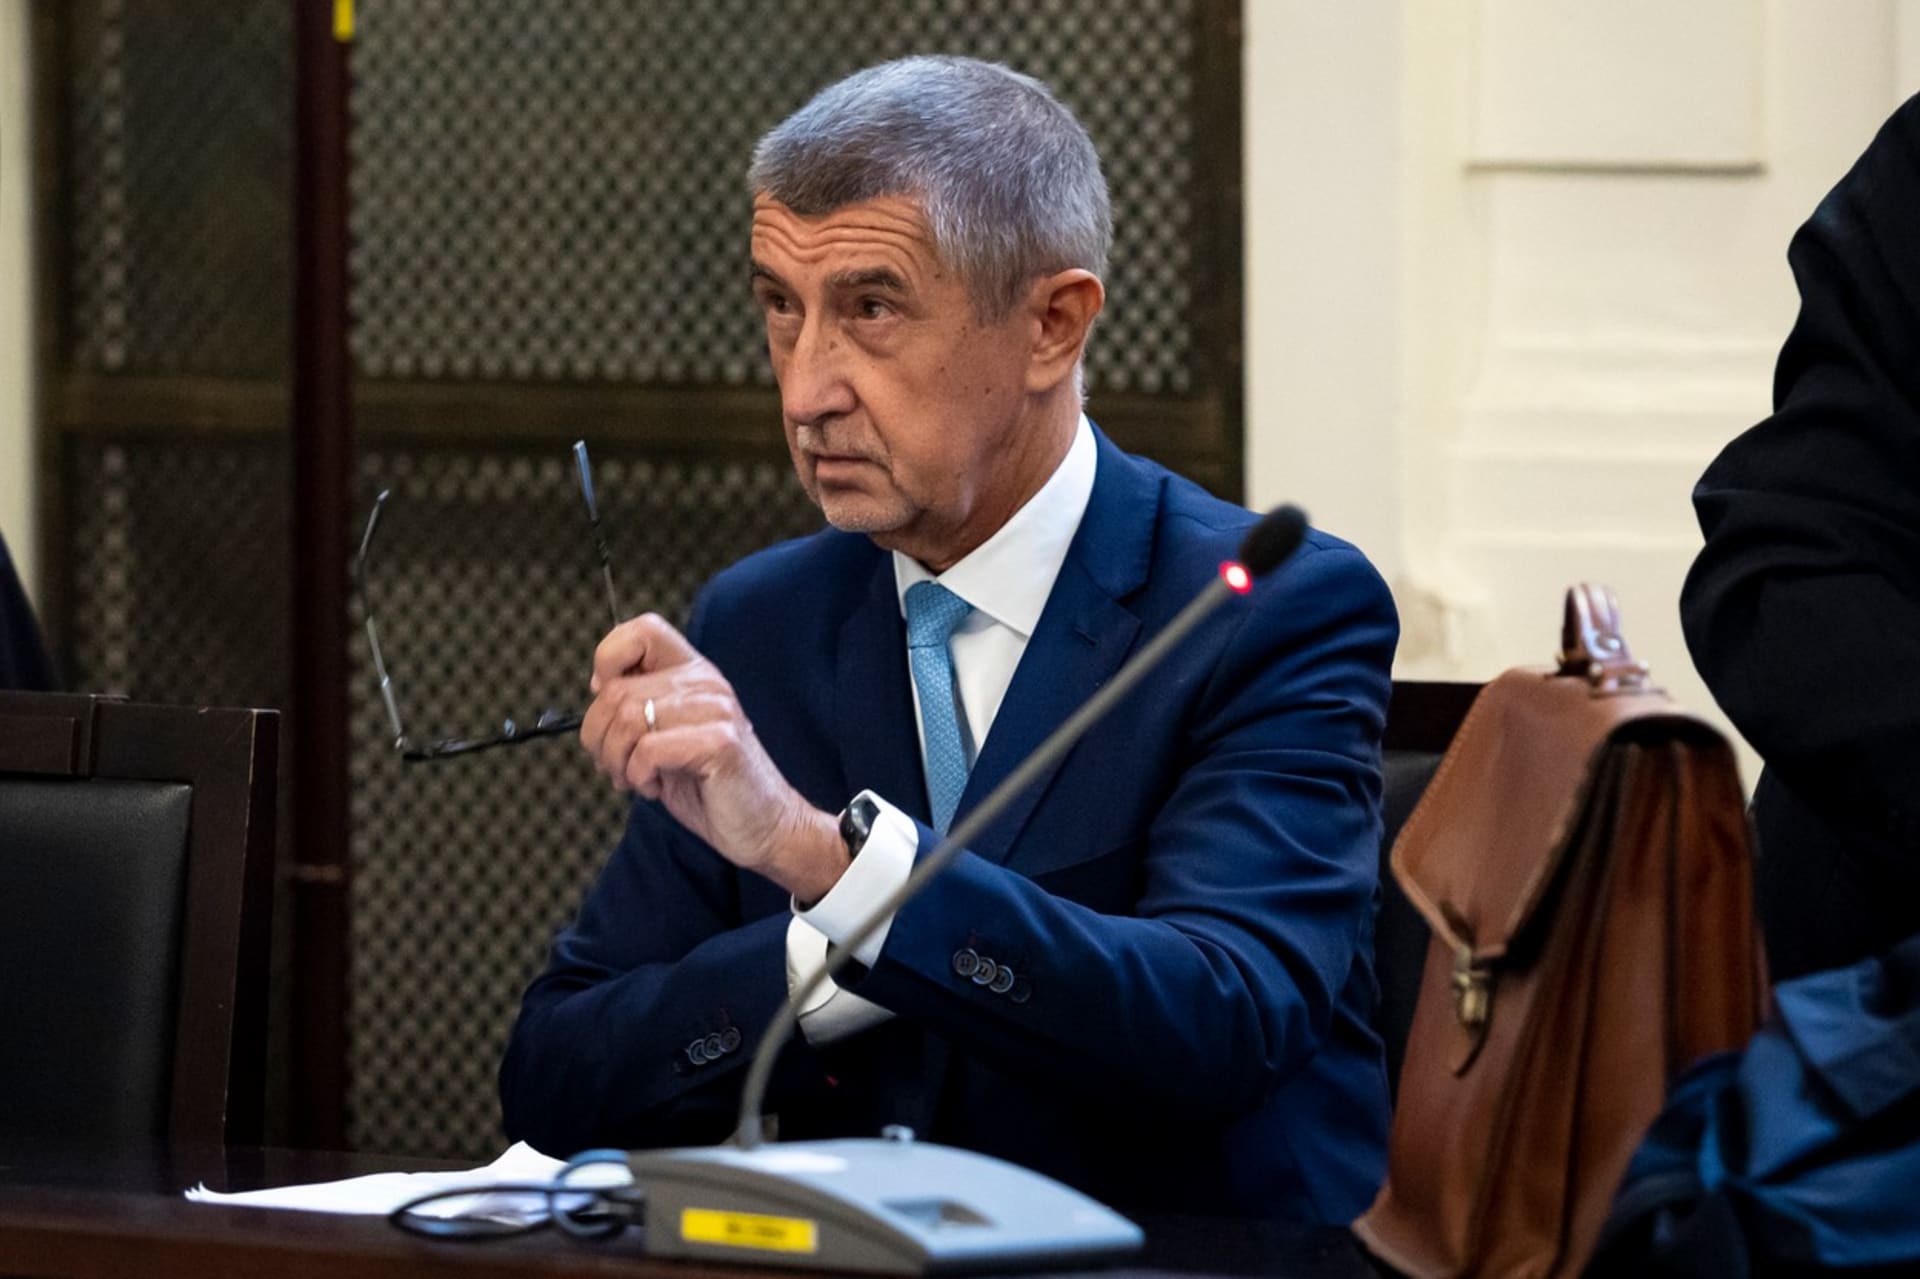 Expremiér Andrej Babiš (ANO) u soudu kvůli kauze Čapí hnízdo (12. 9. 2022)